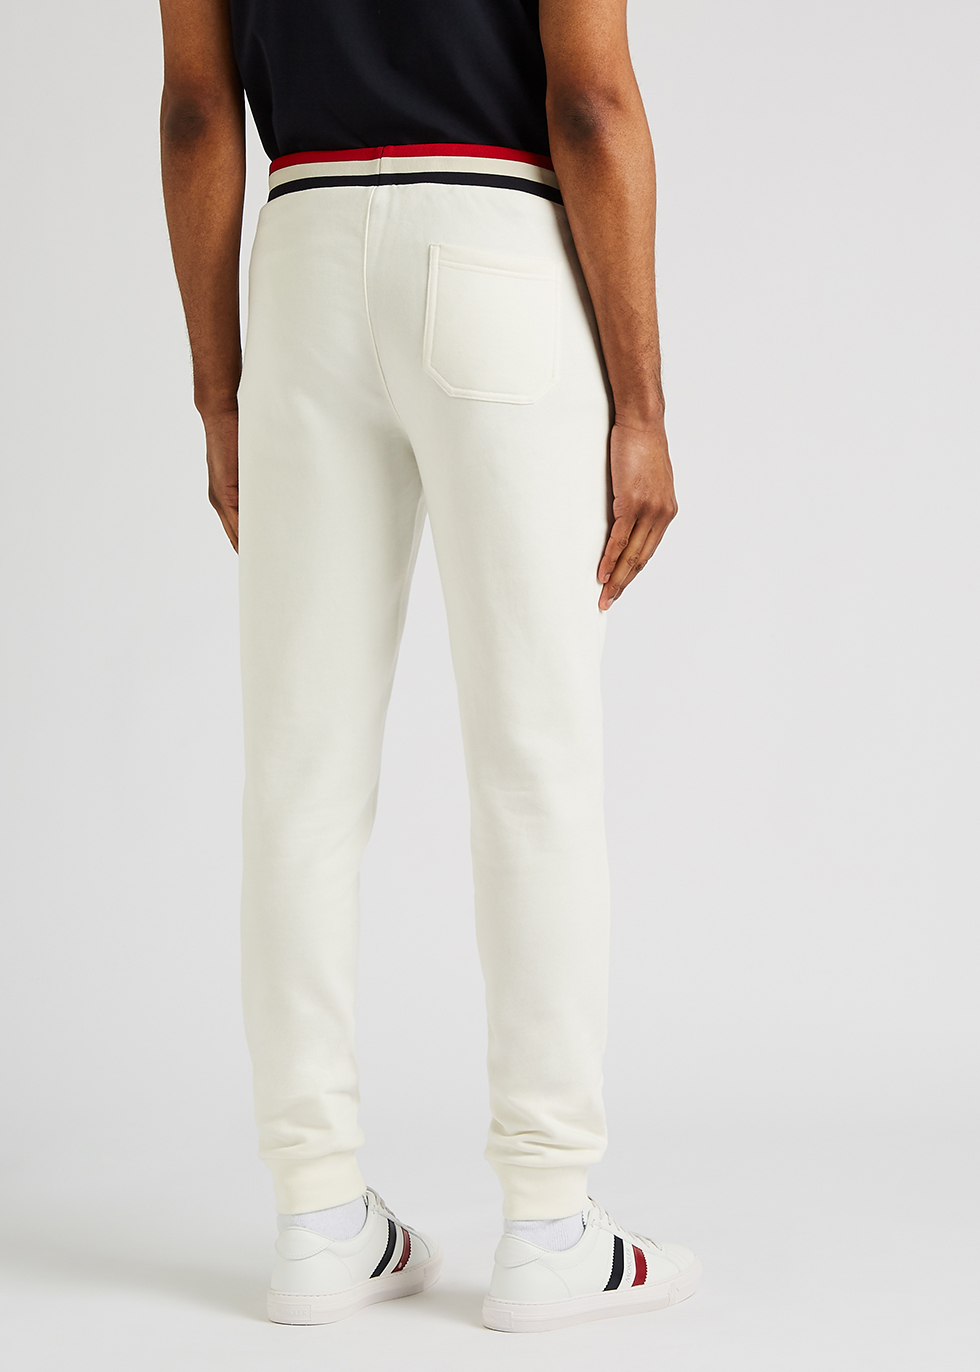 Moncler White cotton sweatpants - Harvey Nichols